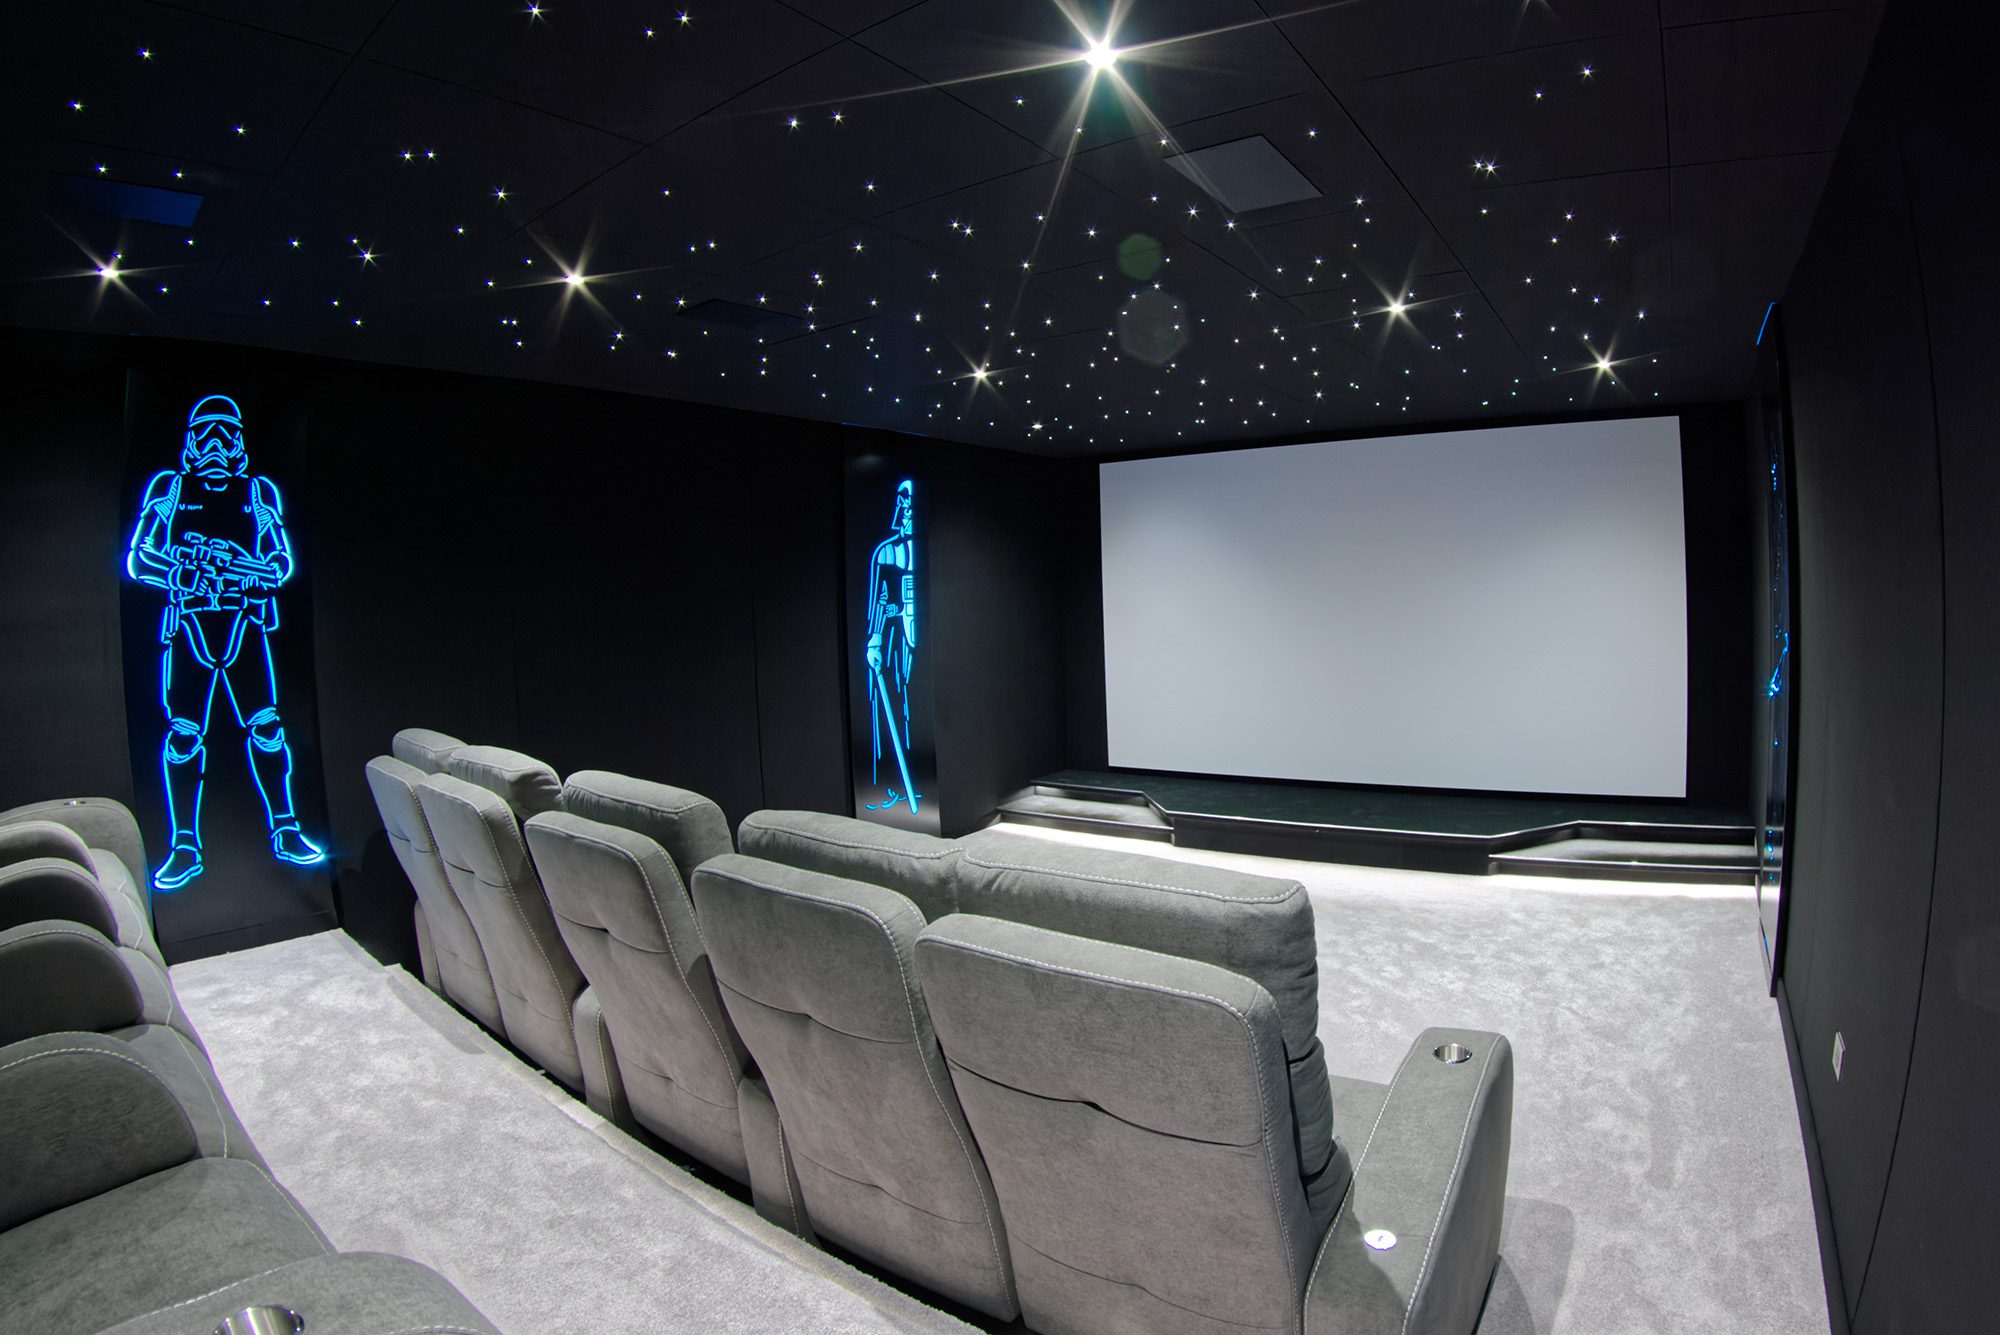 Salle de cinéma privée 33m2 avec 10 fauteuils en tissu gris, ciel étoilé, spots, panneaux décor lumineux Starwarsn, moquette grise à Orgeval